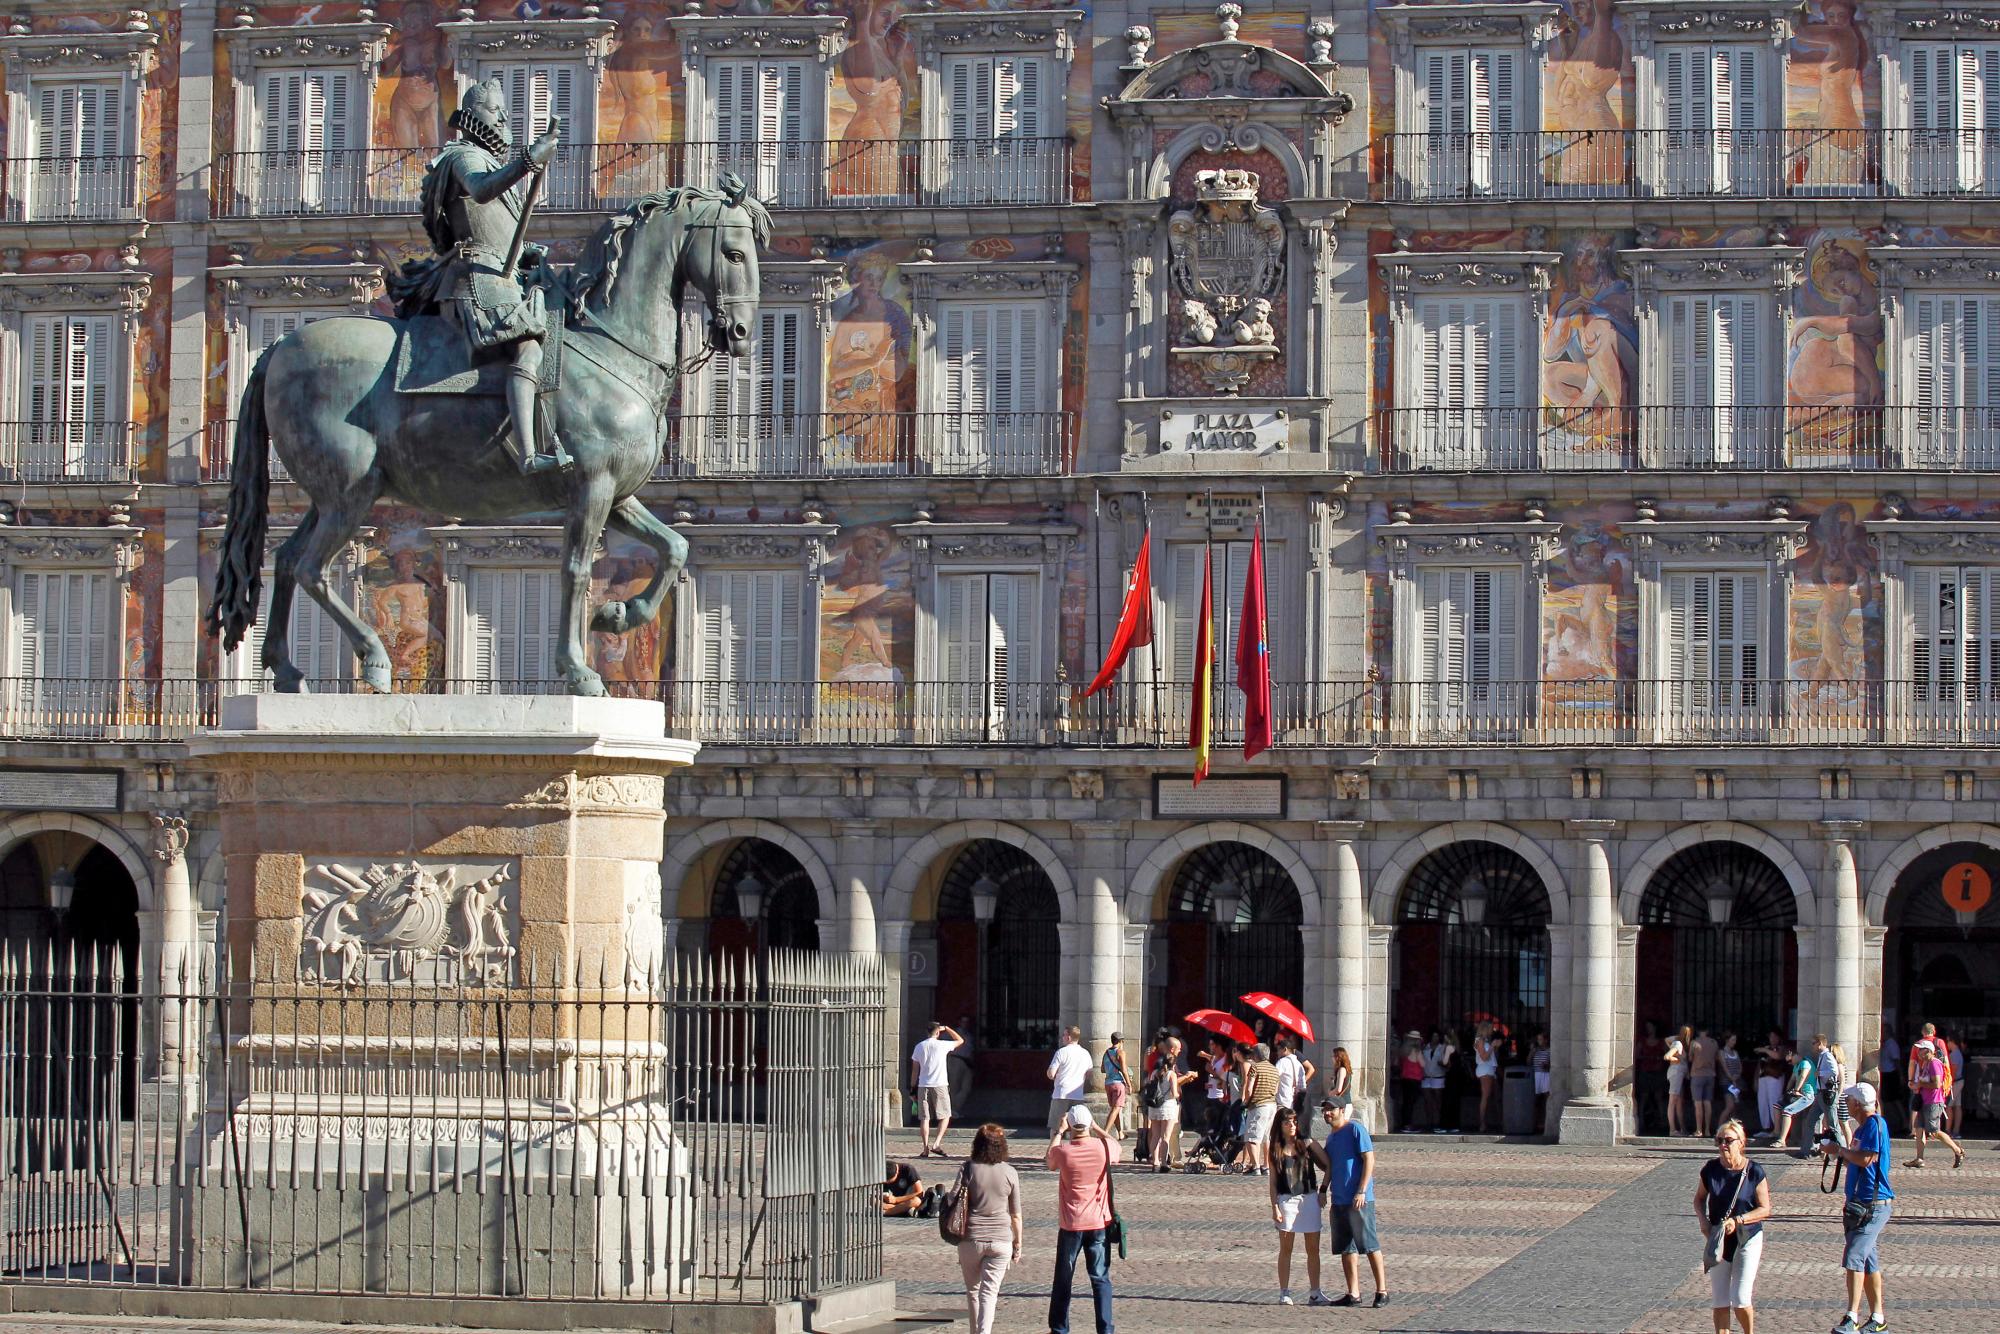 PLAZA MAYOR: MADRID, 08/06/2017.- Estatua ecuestre del rey Felipe III en la Plaza Mayor de Madrid, en sus orígenes conocida como Plaza del Arrabal. Su construcción comenzó en 1561 por orden de Felipe II tras el traslado de la corte a Madrid y terminó en 1617 reinando Felipe III . EFE / Paolo Aguilar/ra